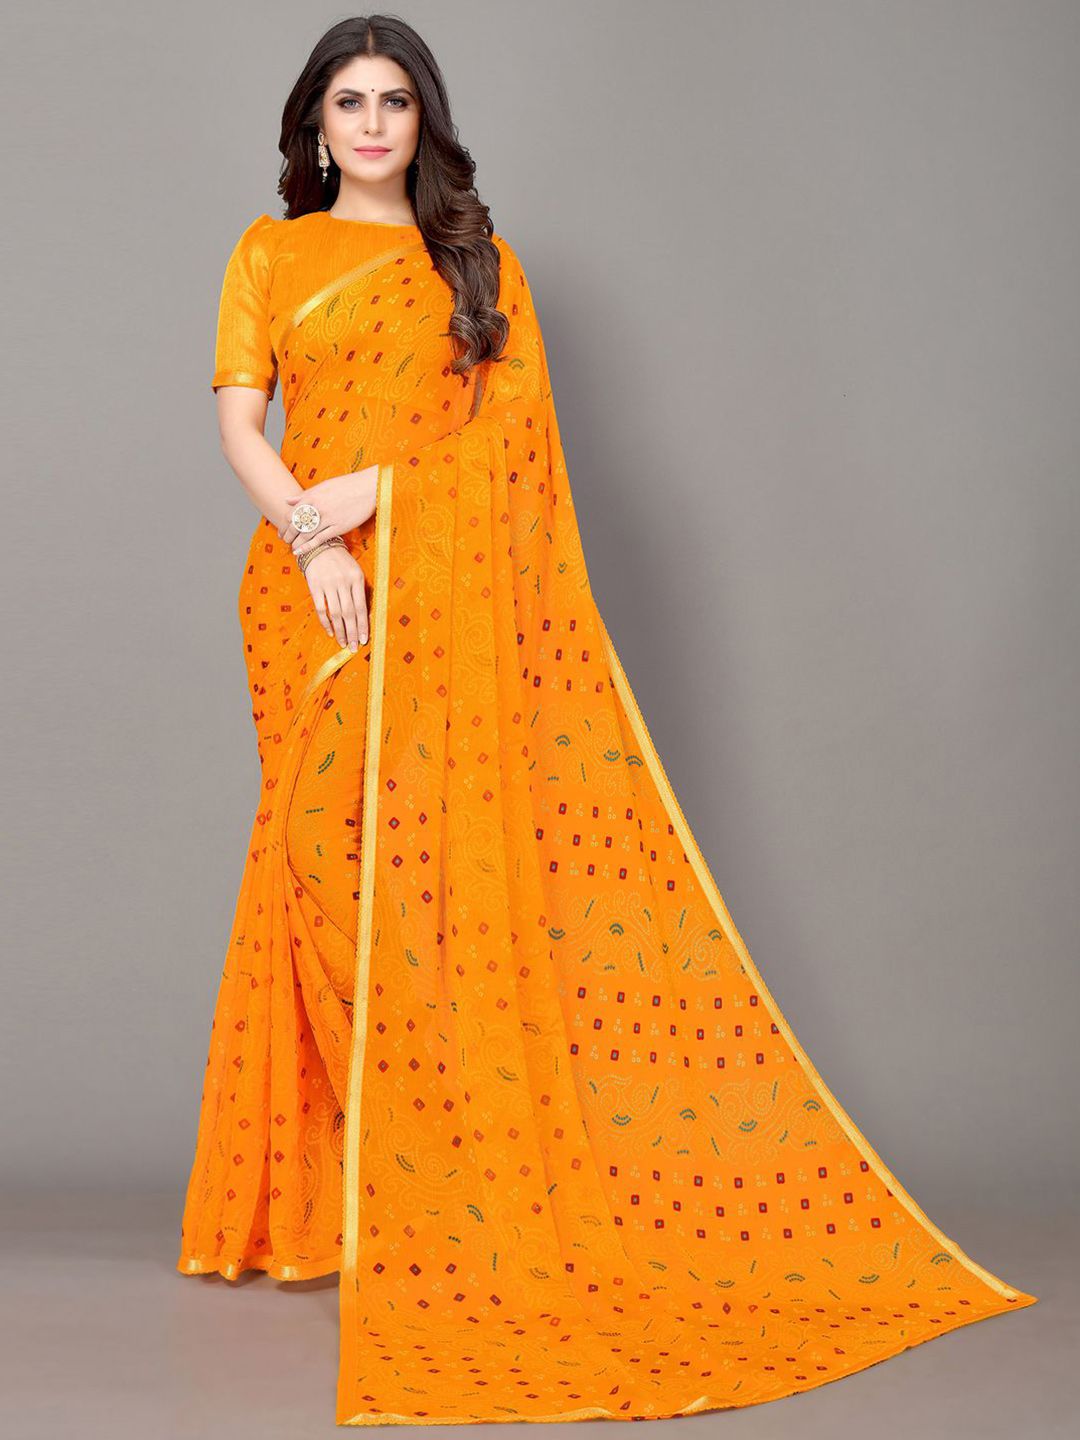 KALINI Yellow & Gold-Toned Bandhani Zari Bandhani Saree Price in India